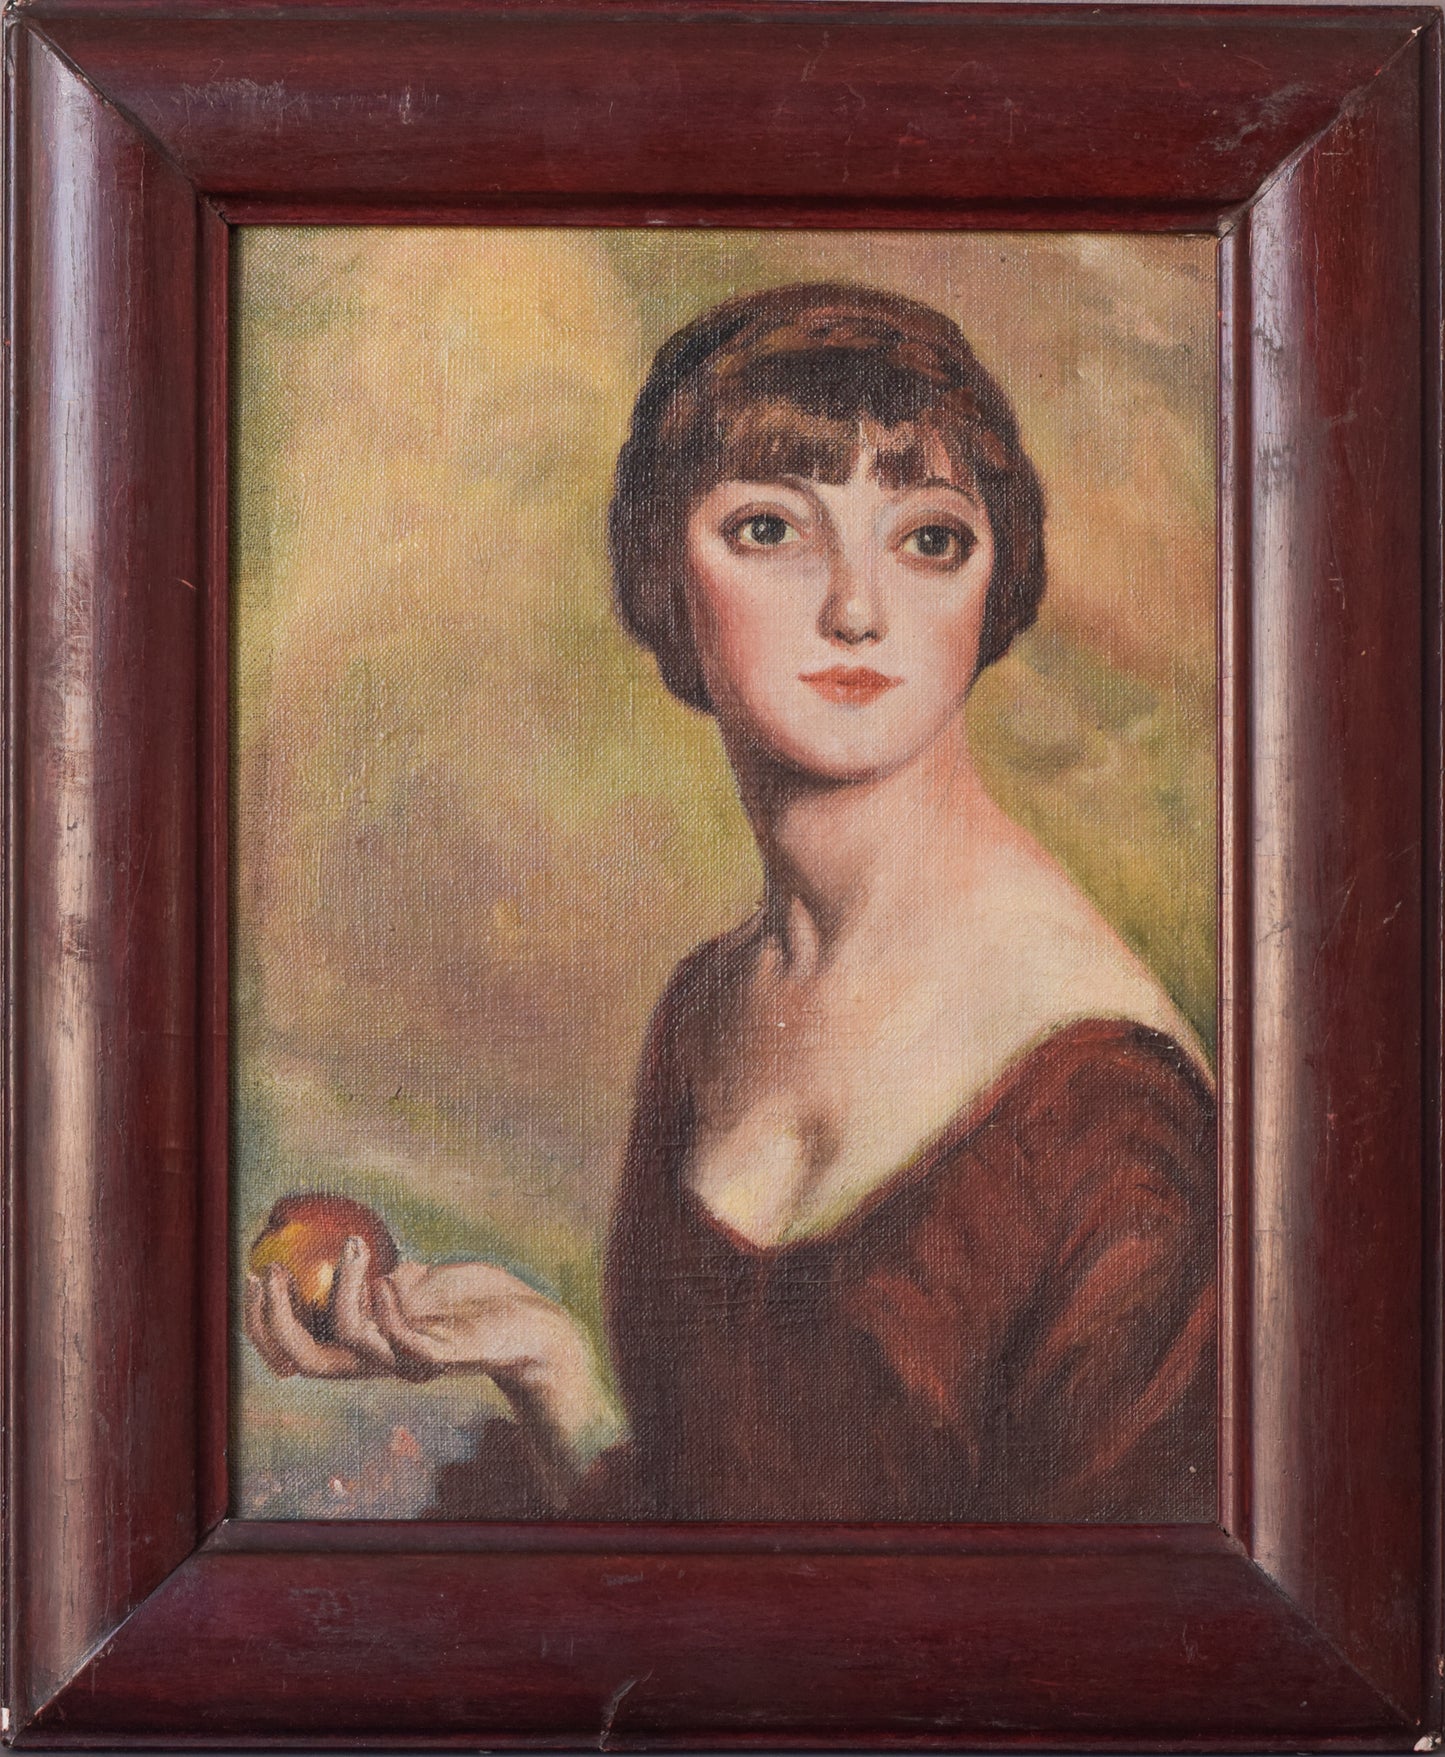 Retrato al óleo de una mujer joven sosteniendo una manzana